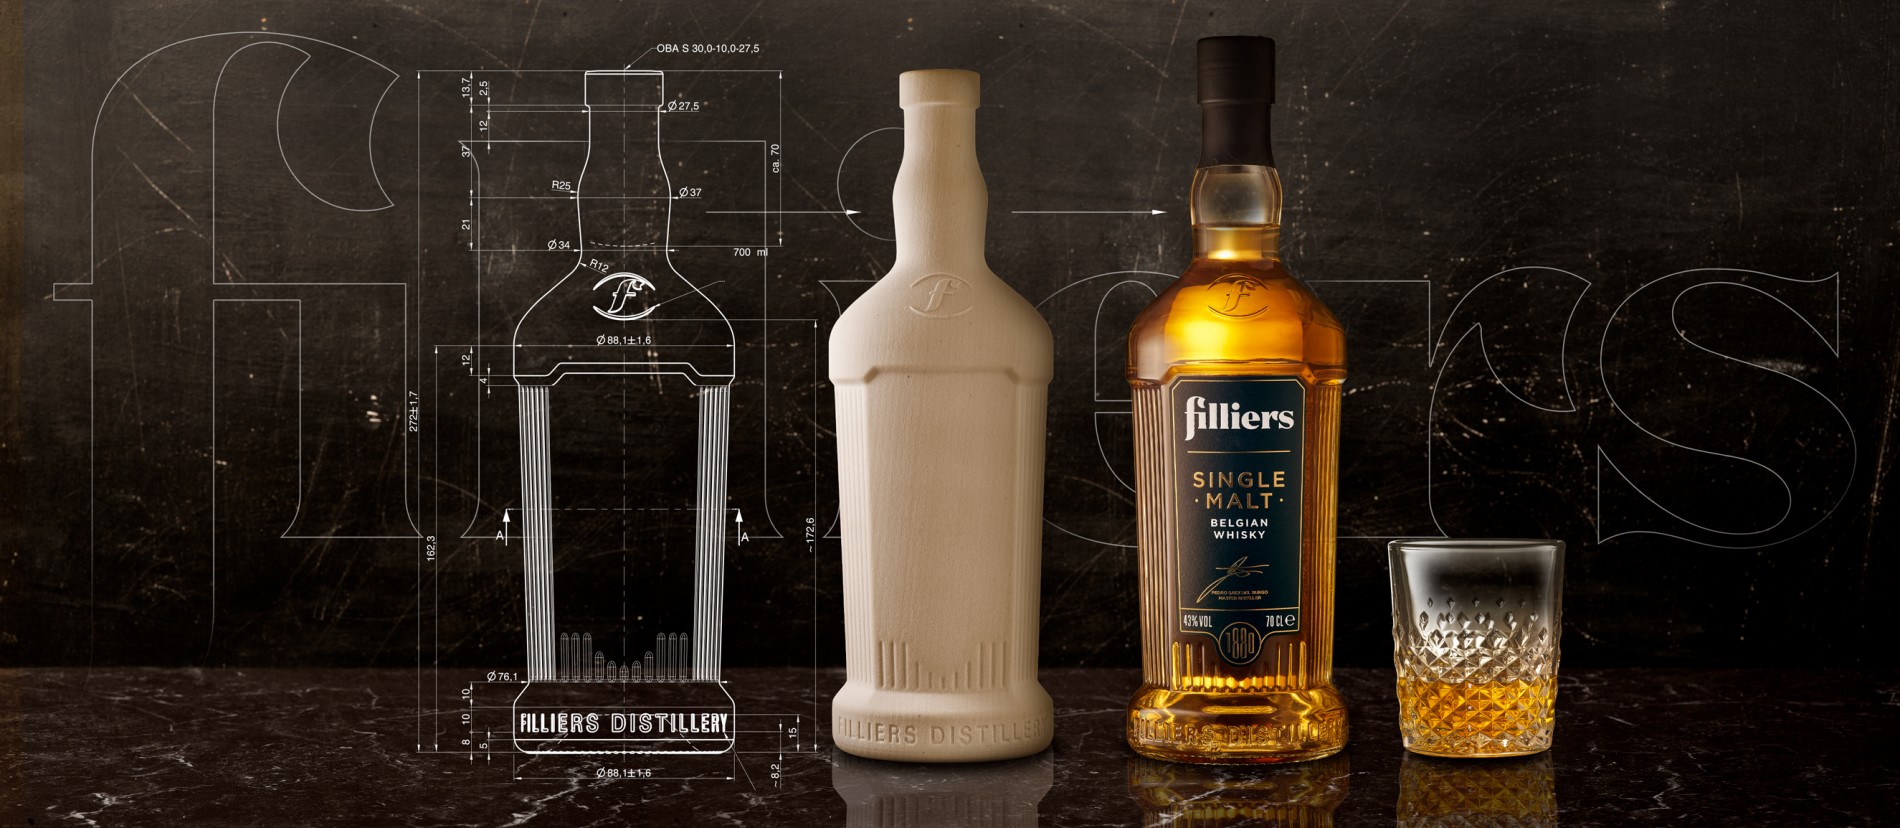 Single Malt Whisky for FILLIERS